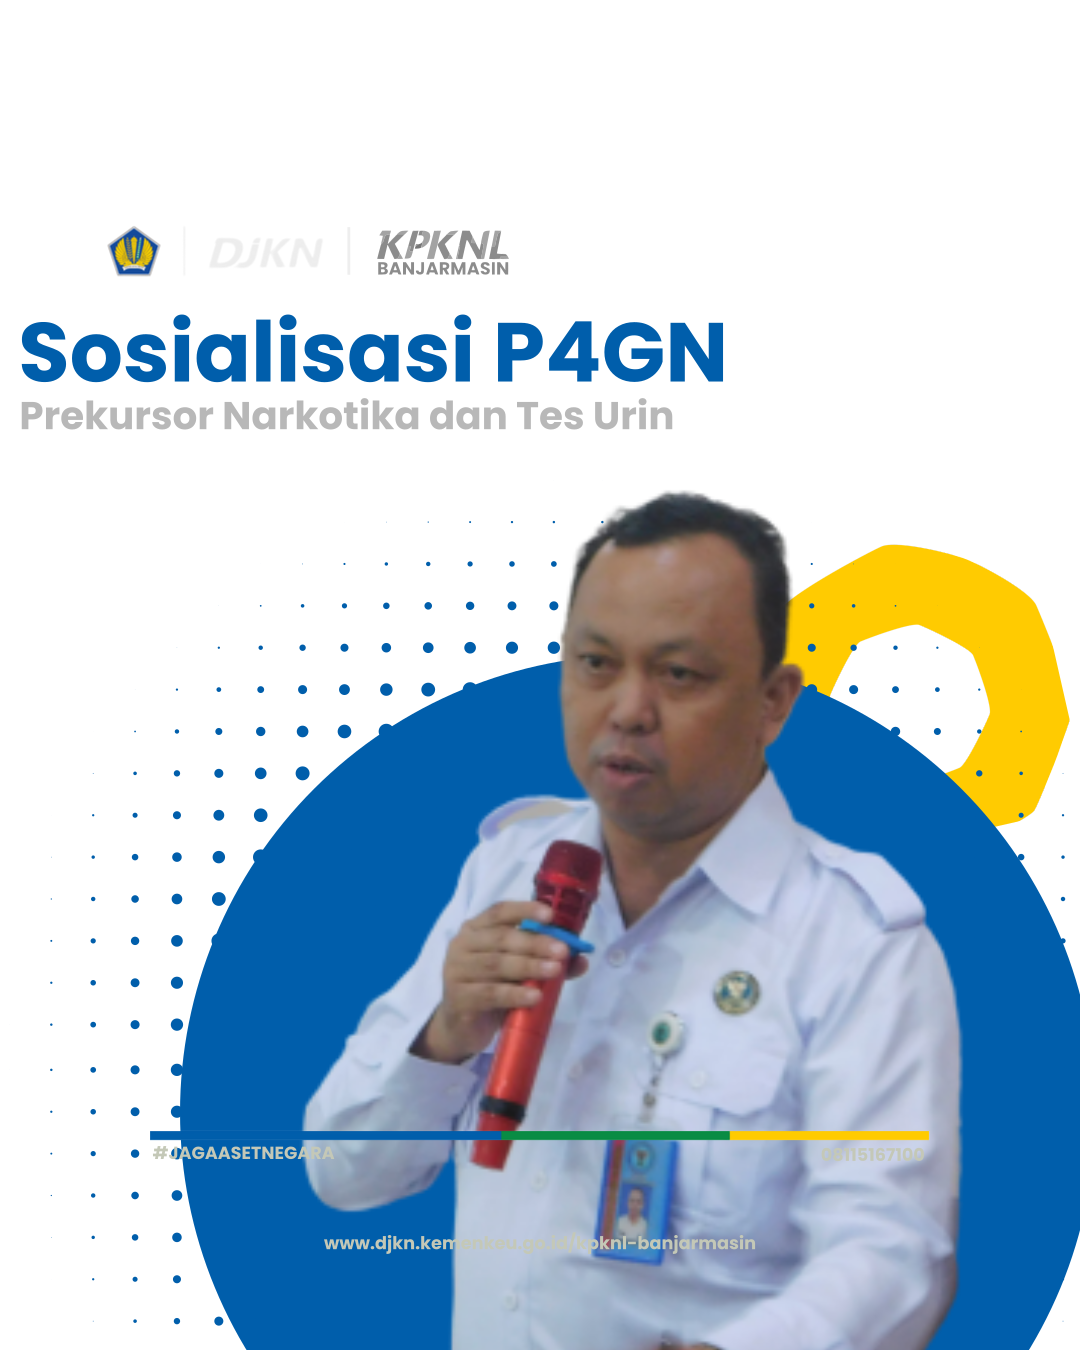 KPKNL Banjarmasin Selenggarakan Sosialisasi P4GN, Prekursor Narkotika dan Tes Urin